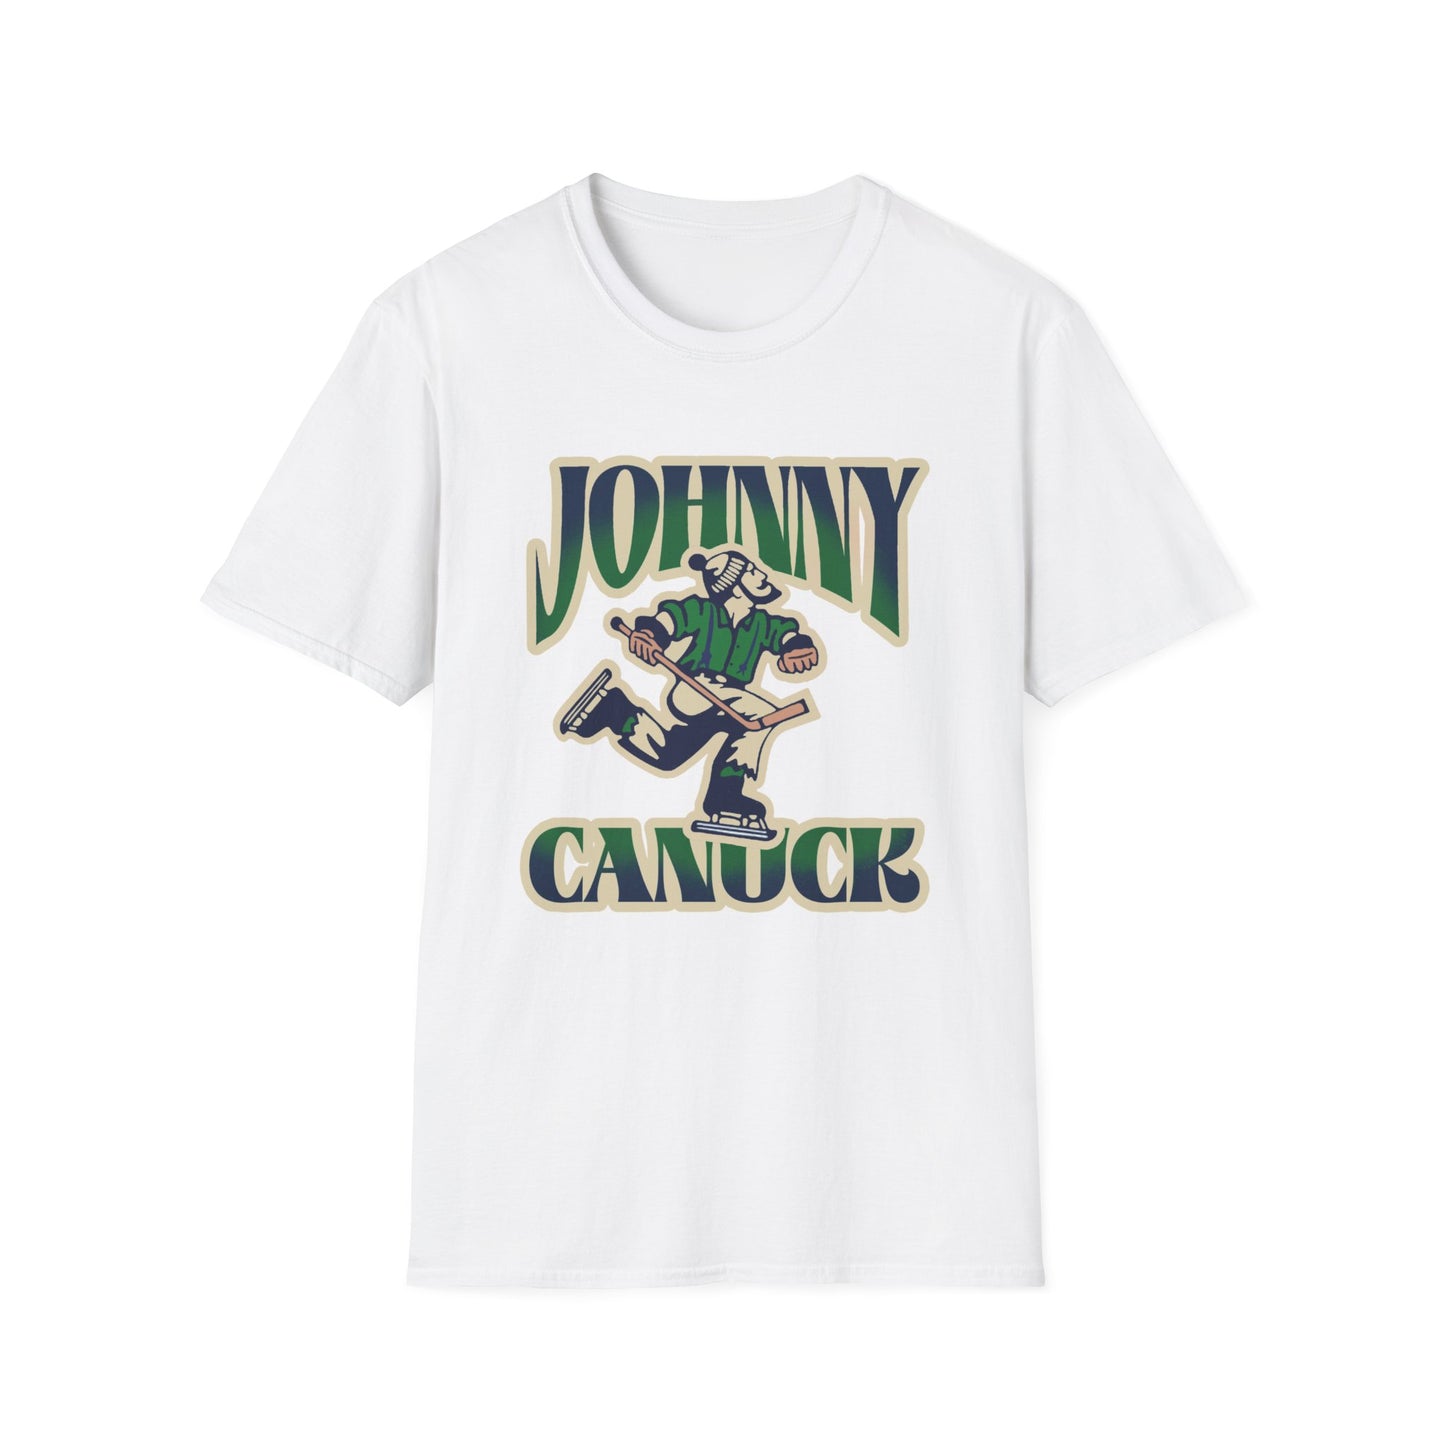 Johnny Canuck Blue & Green T-Shirt